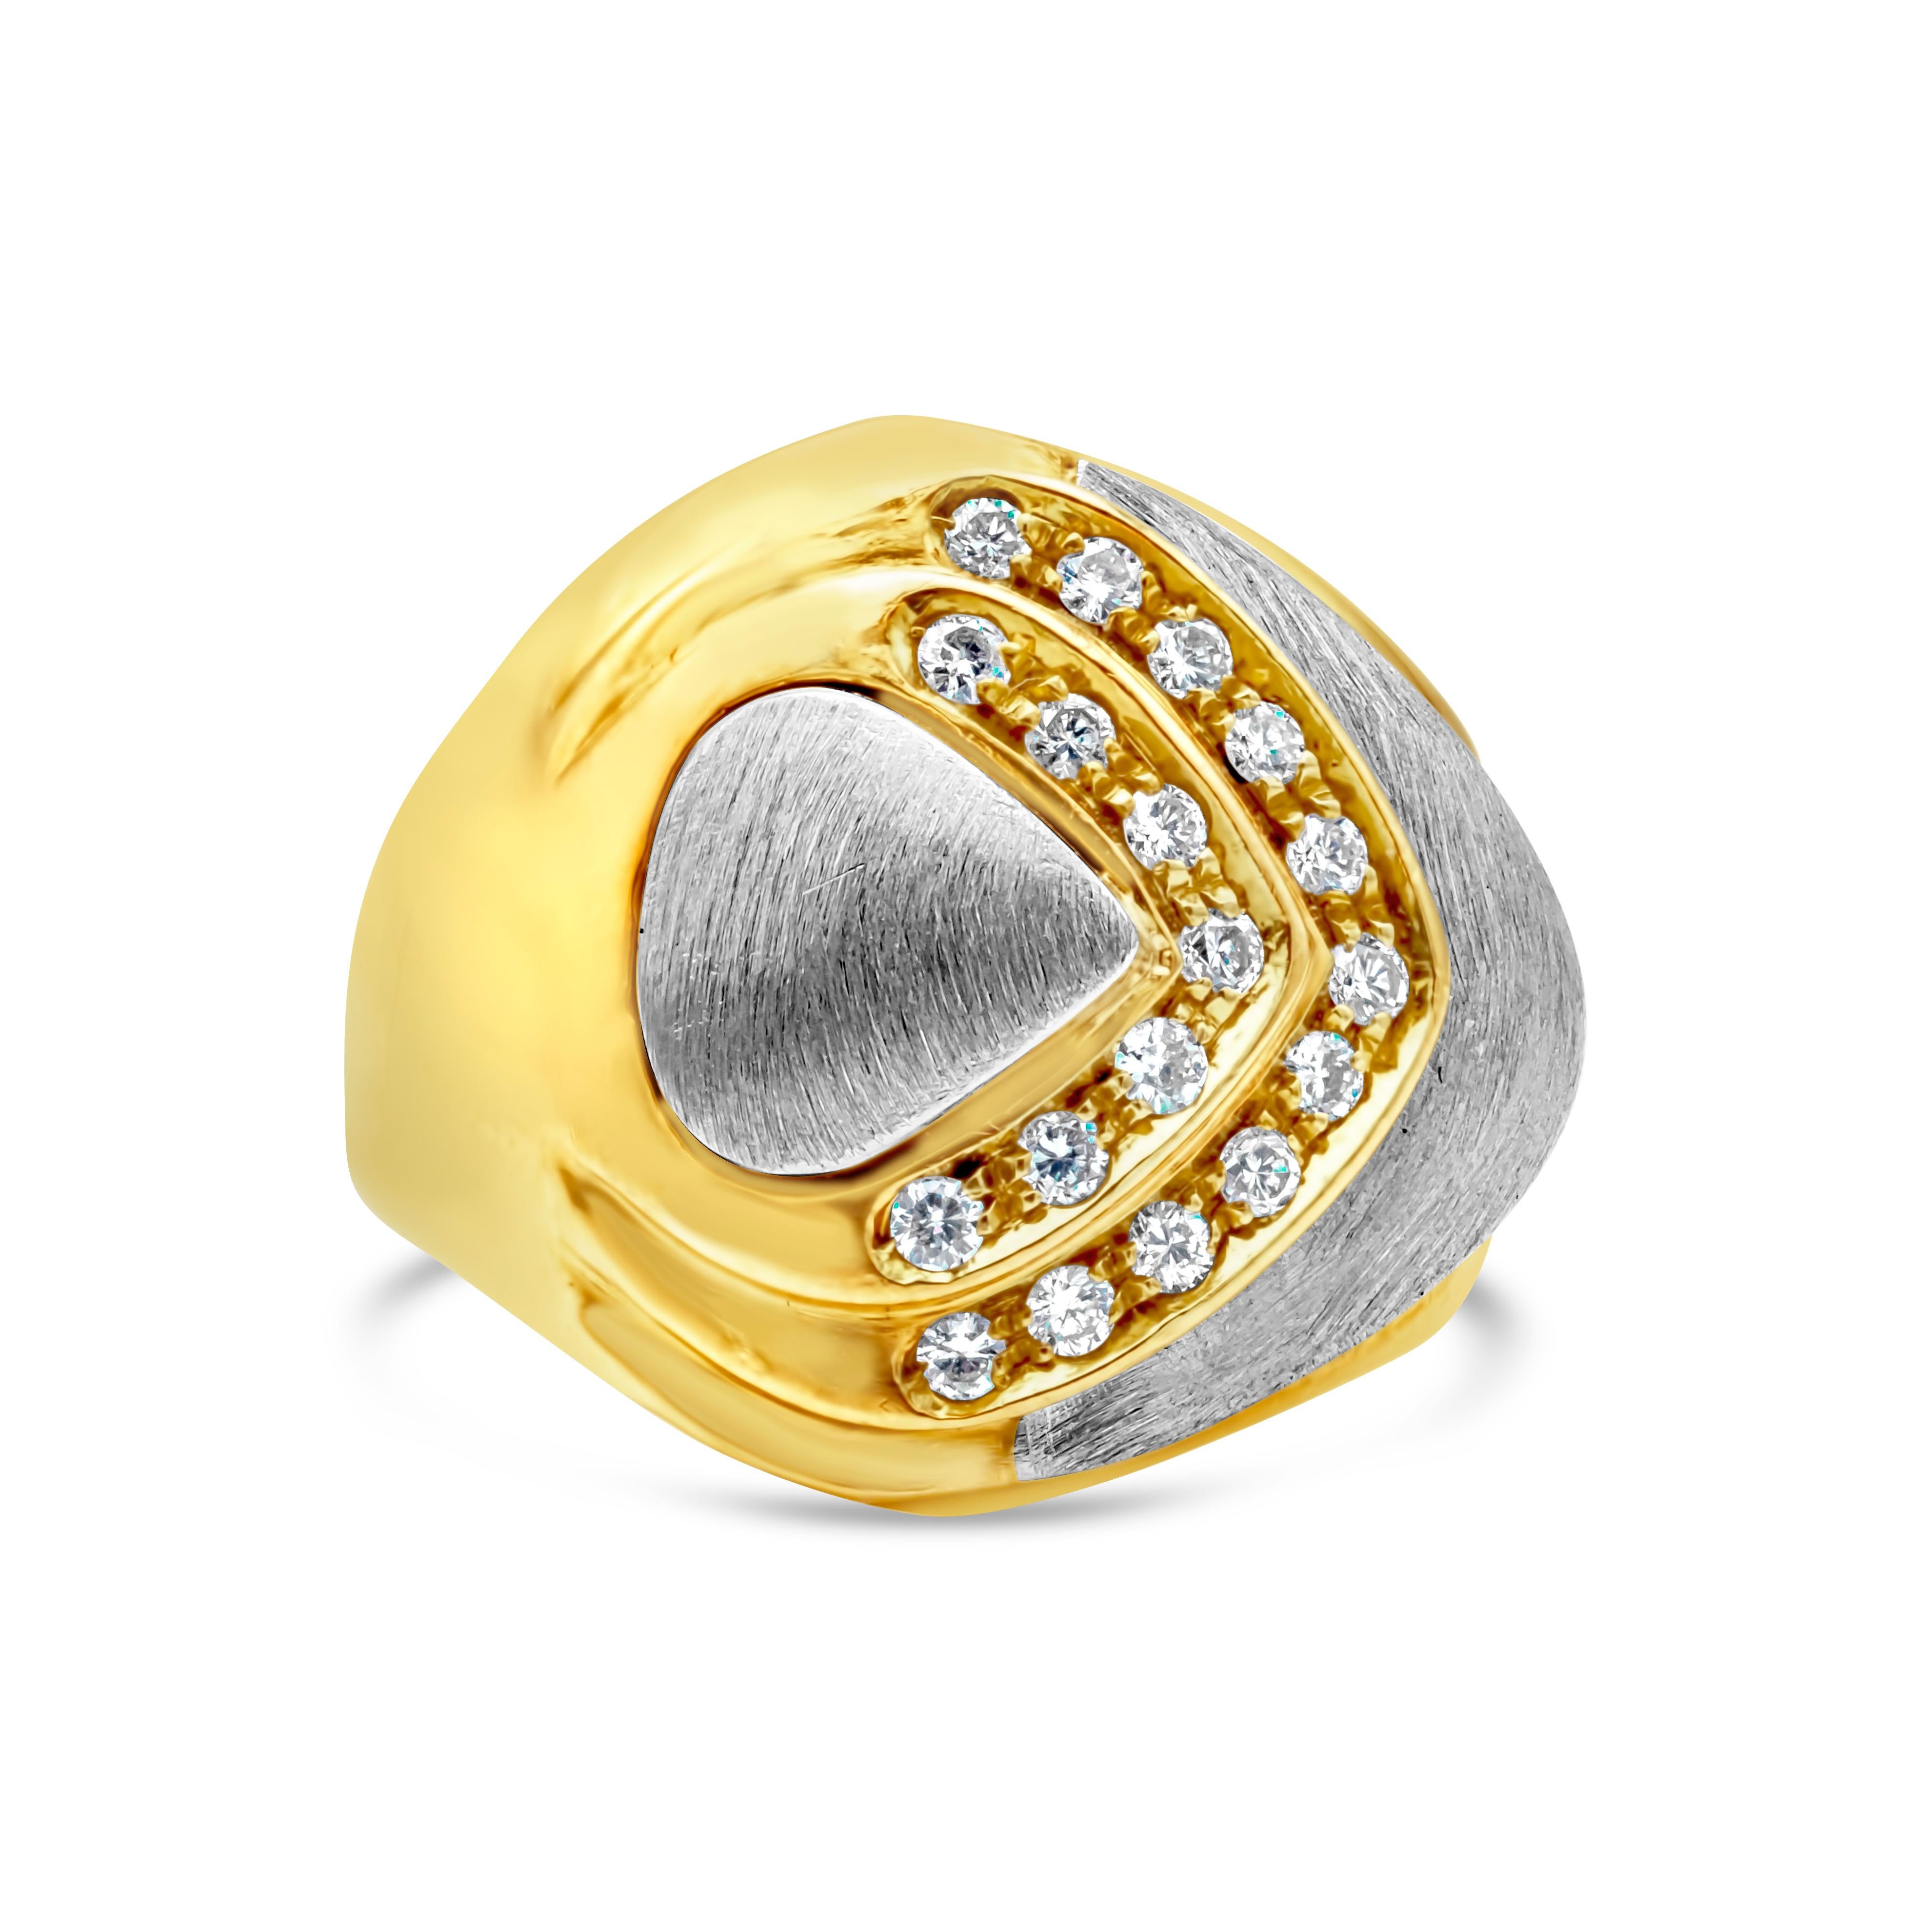 Ein modischer Vintage-Ring mit runden Brillanten mit einem Gesamtgewicht von 0,27 Karat, gefasst in einer gewölbten 18-Karat-Gelbgoldfassung, akzentuiert mit gebürstetem Weißgolddesign. Größe 6.75 US.


